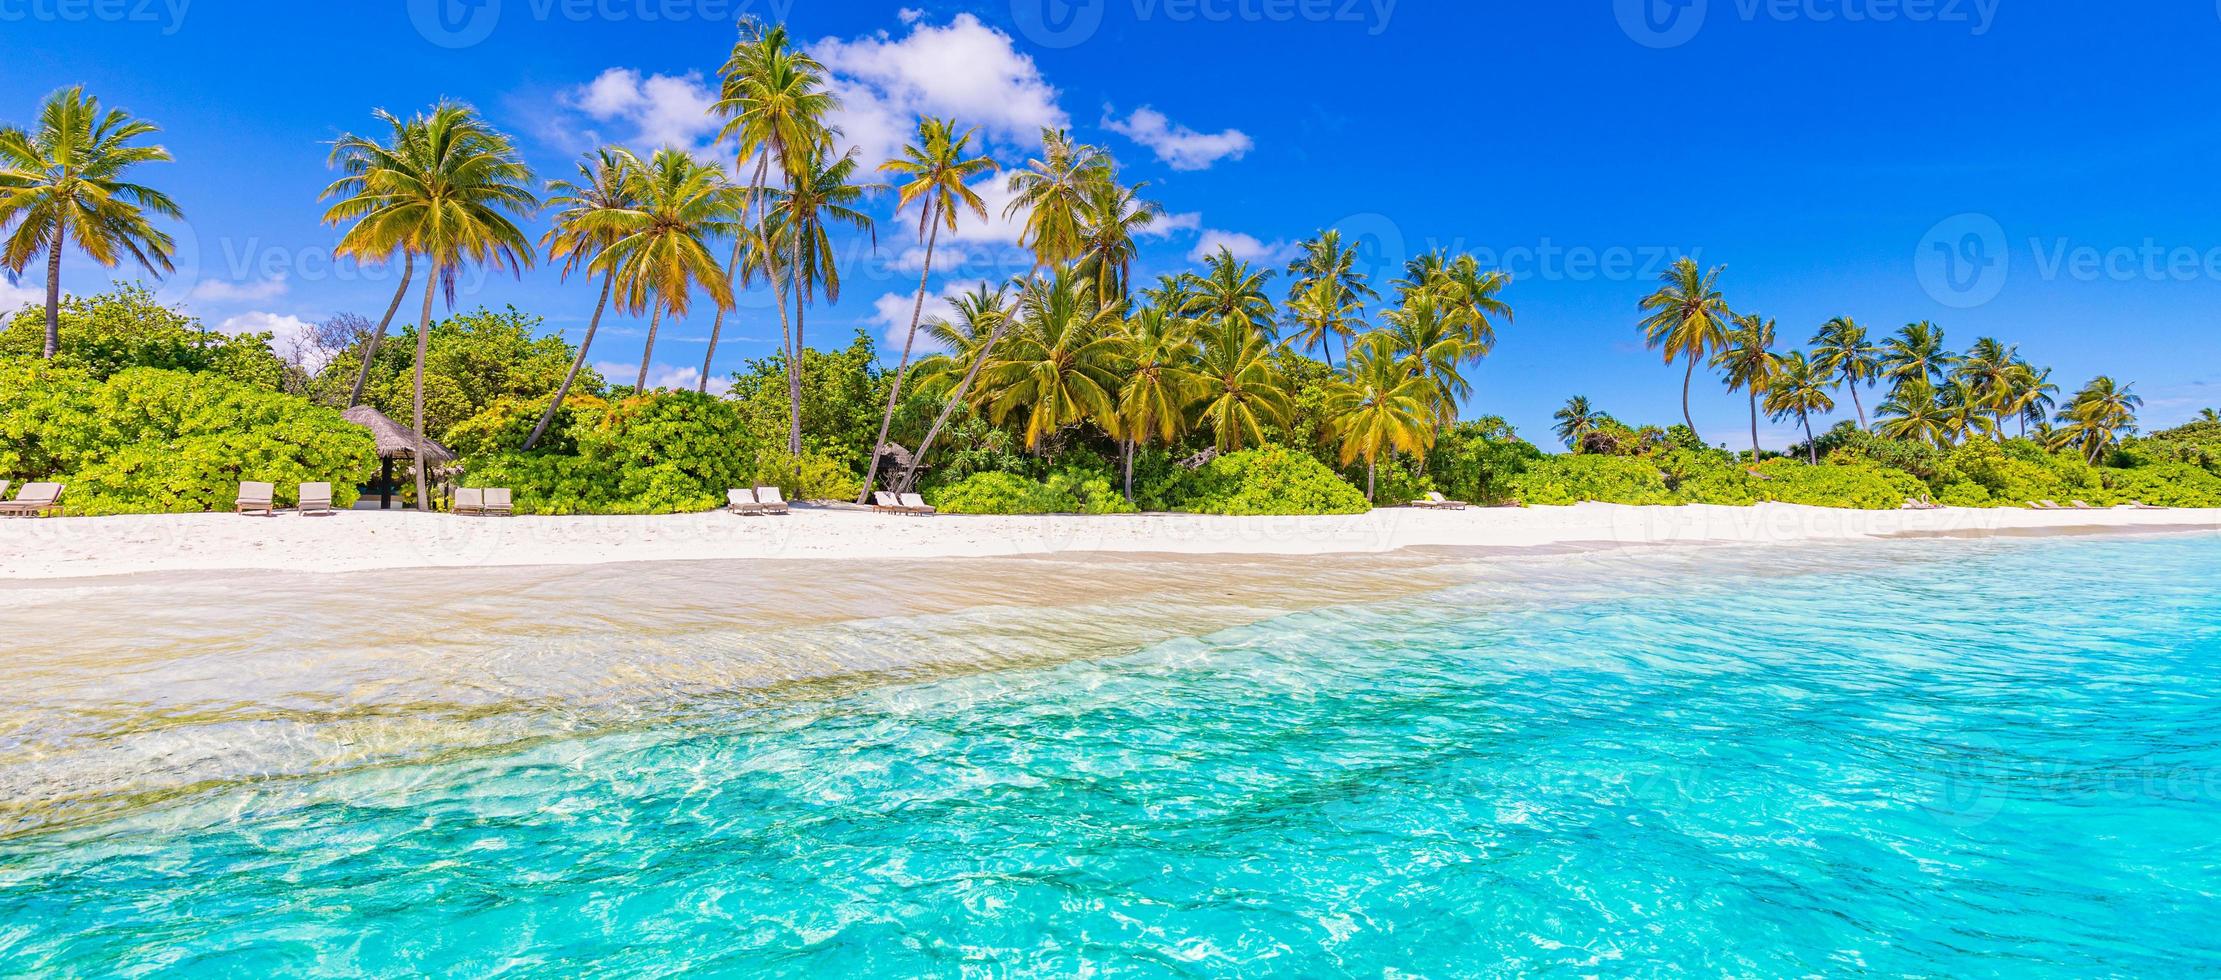 spiaggia panoramica dell'isola delle maldive. paesaggio tropicale panorama estivo, sabbia bianca con palme mare. destinazione di vacanza di viaggio di lusso. paesaggio esotico della spiaggia. natura meravigliosa, relax, libertà, natura foto